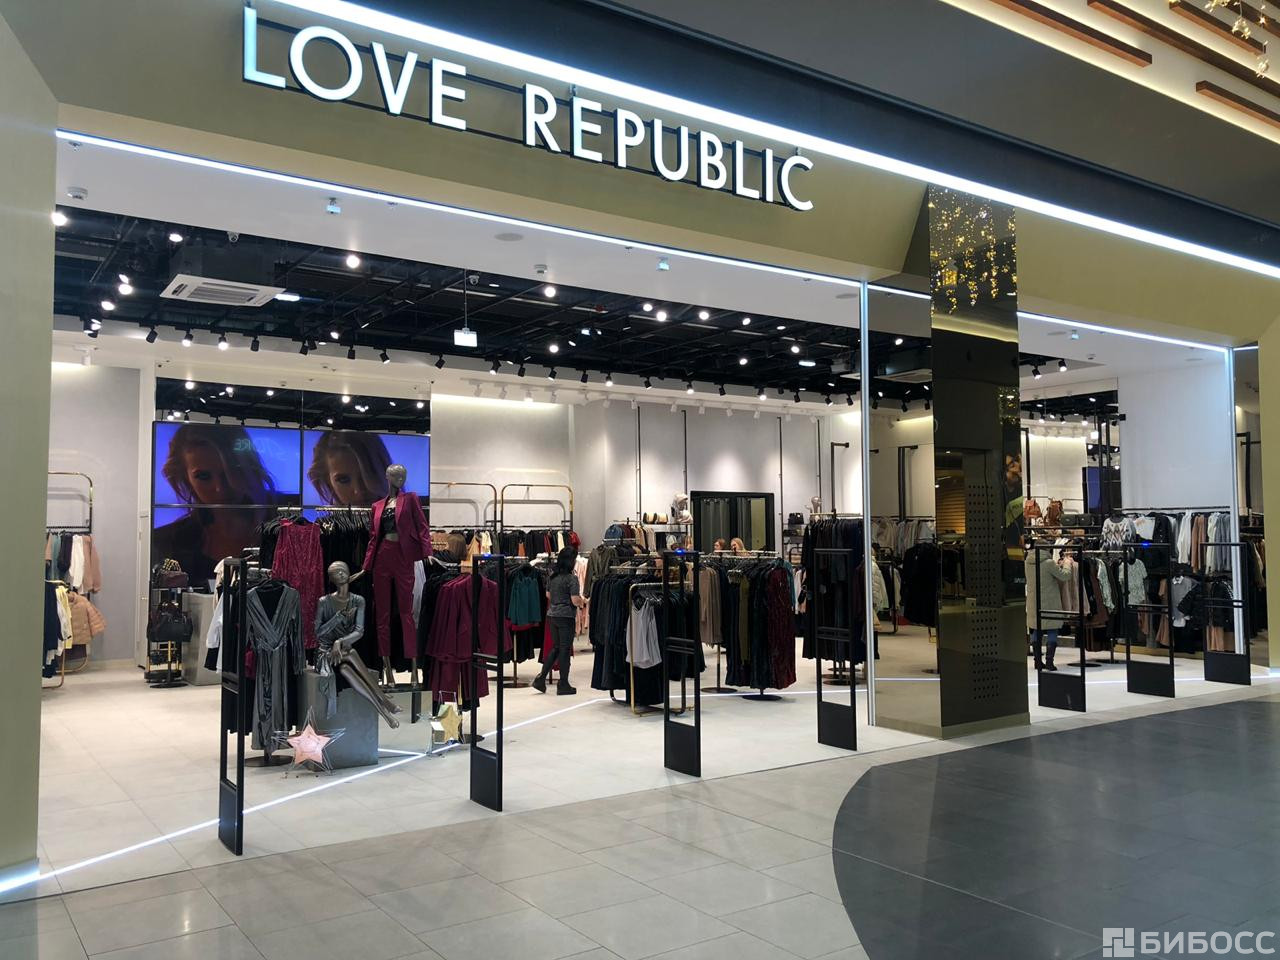 купить франшизу love republic